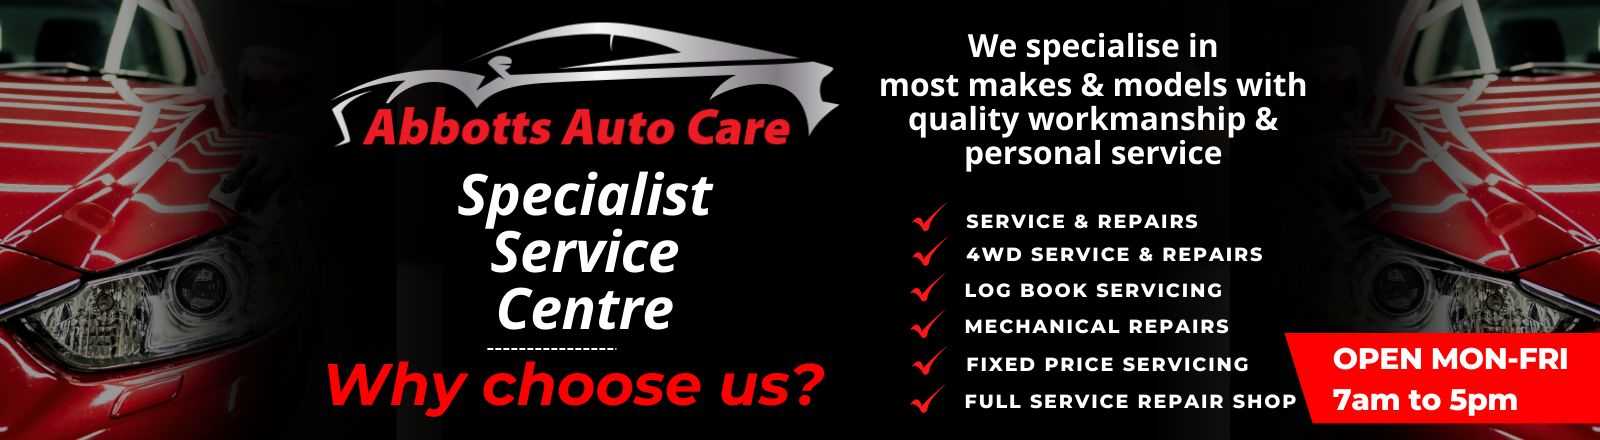 Abbotts Auto Care Specialist Service Centre 